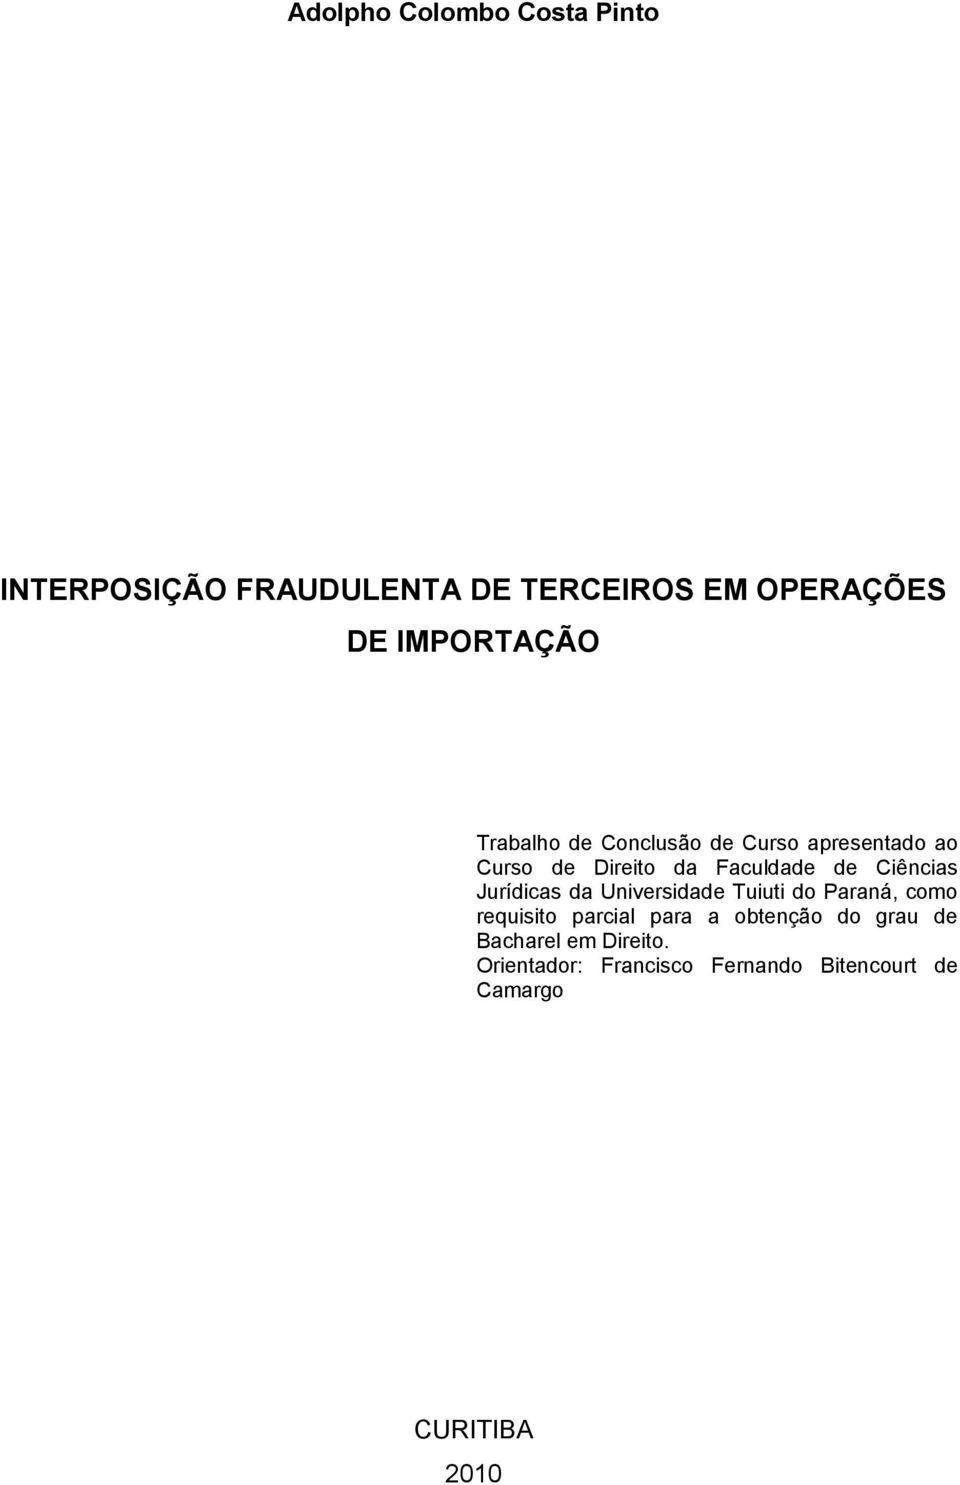 Ciências Jurídicas da Universidade Tuiuti do Paraná, como requisito parcial para a